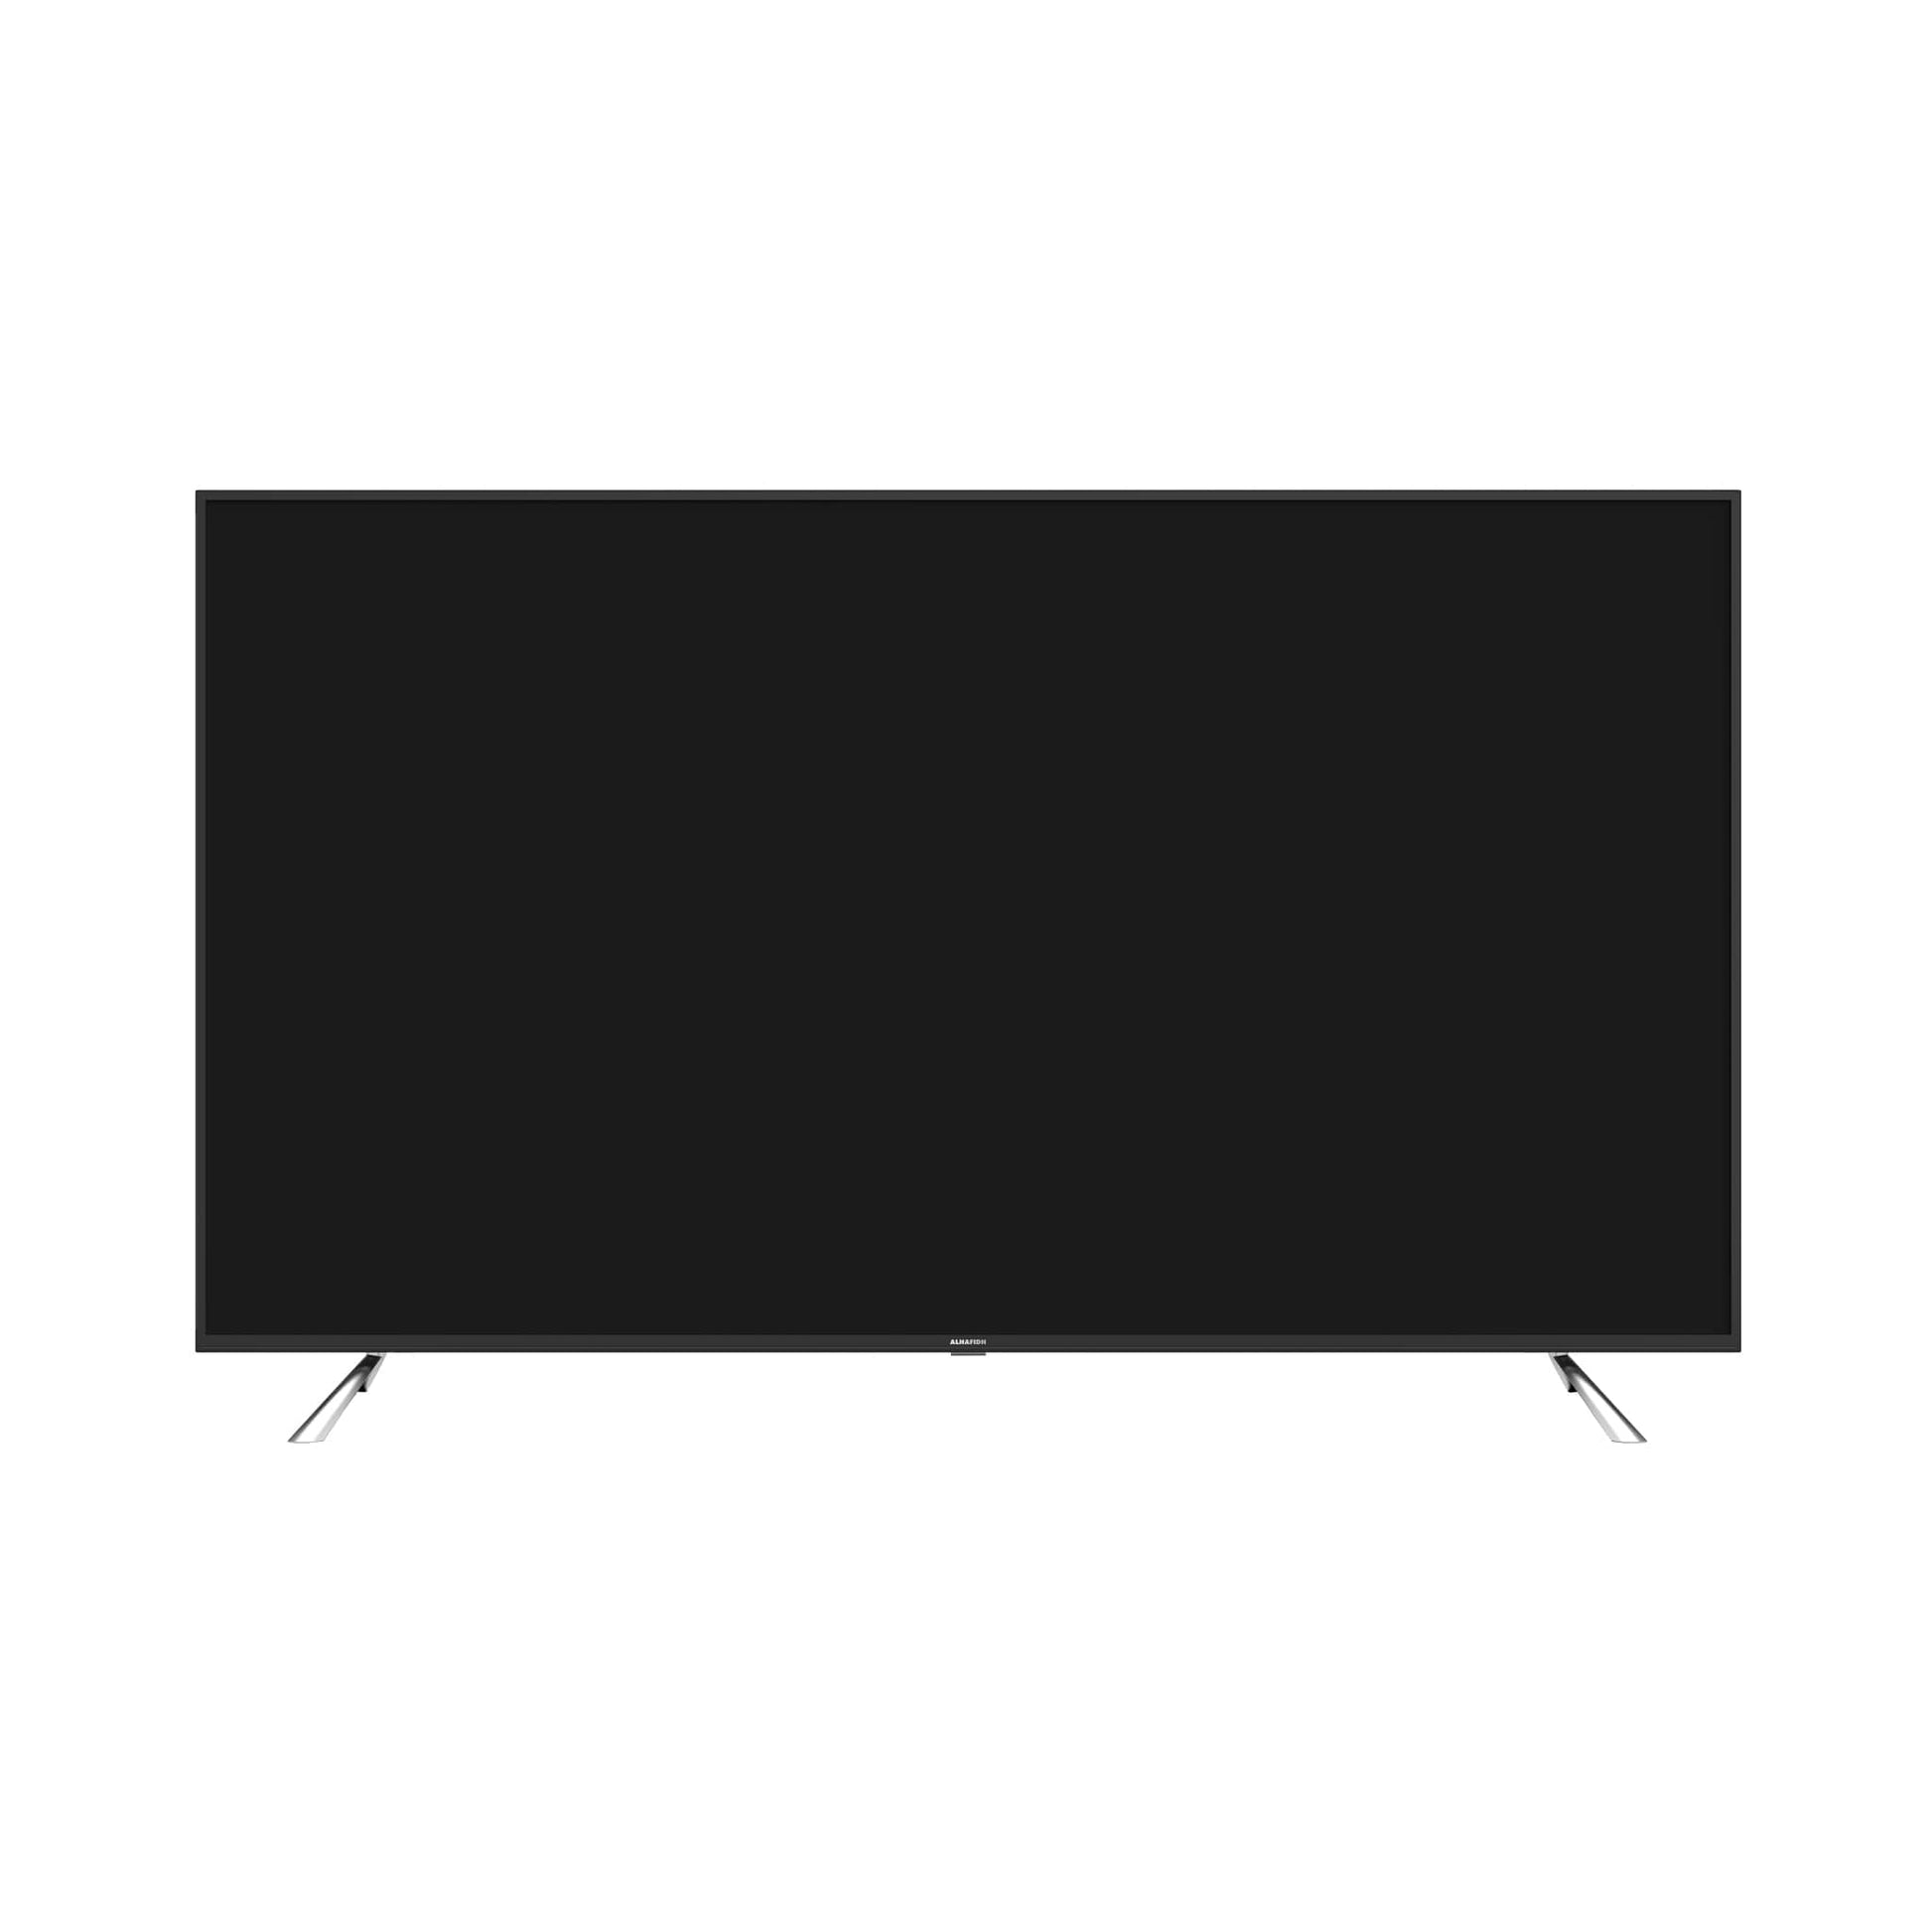 تلفزيون 70 بوصة سمارت LED 4K UHD (إصدار 2021) الحافظ - #موغامبو ستور#